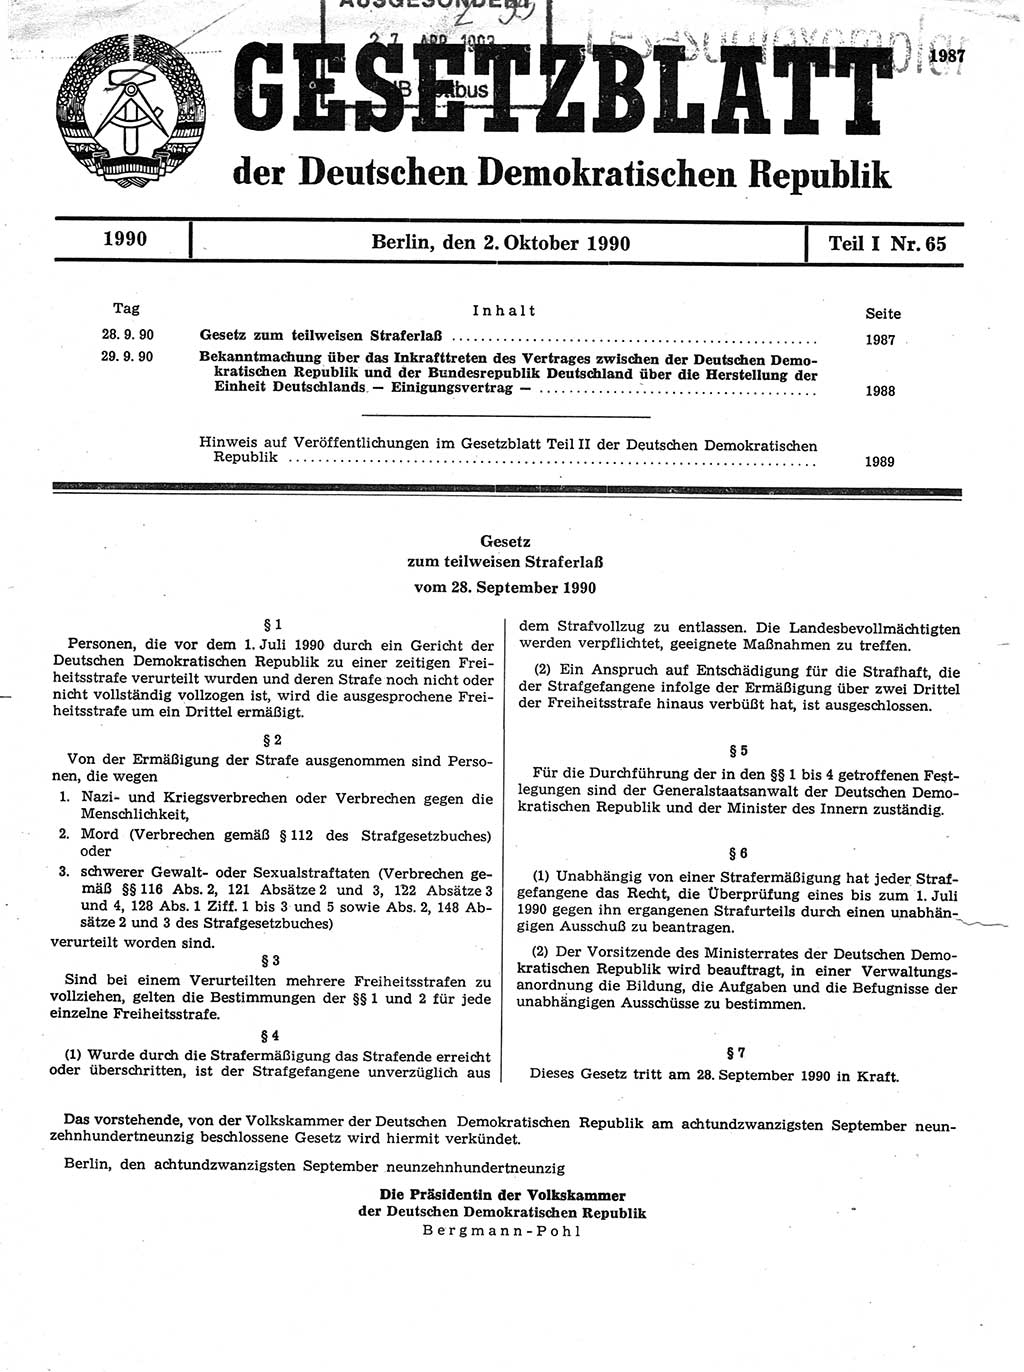 Gesetzblatt (GBl.) der Deutschen Demokratischen Republik (DDR) Teil Ⅰ 1990, Seite 1987 (GBl. DDR Ⅰ 1990, S. 1987)